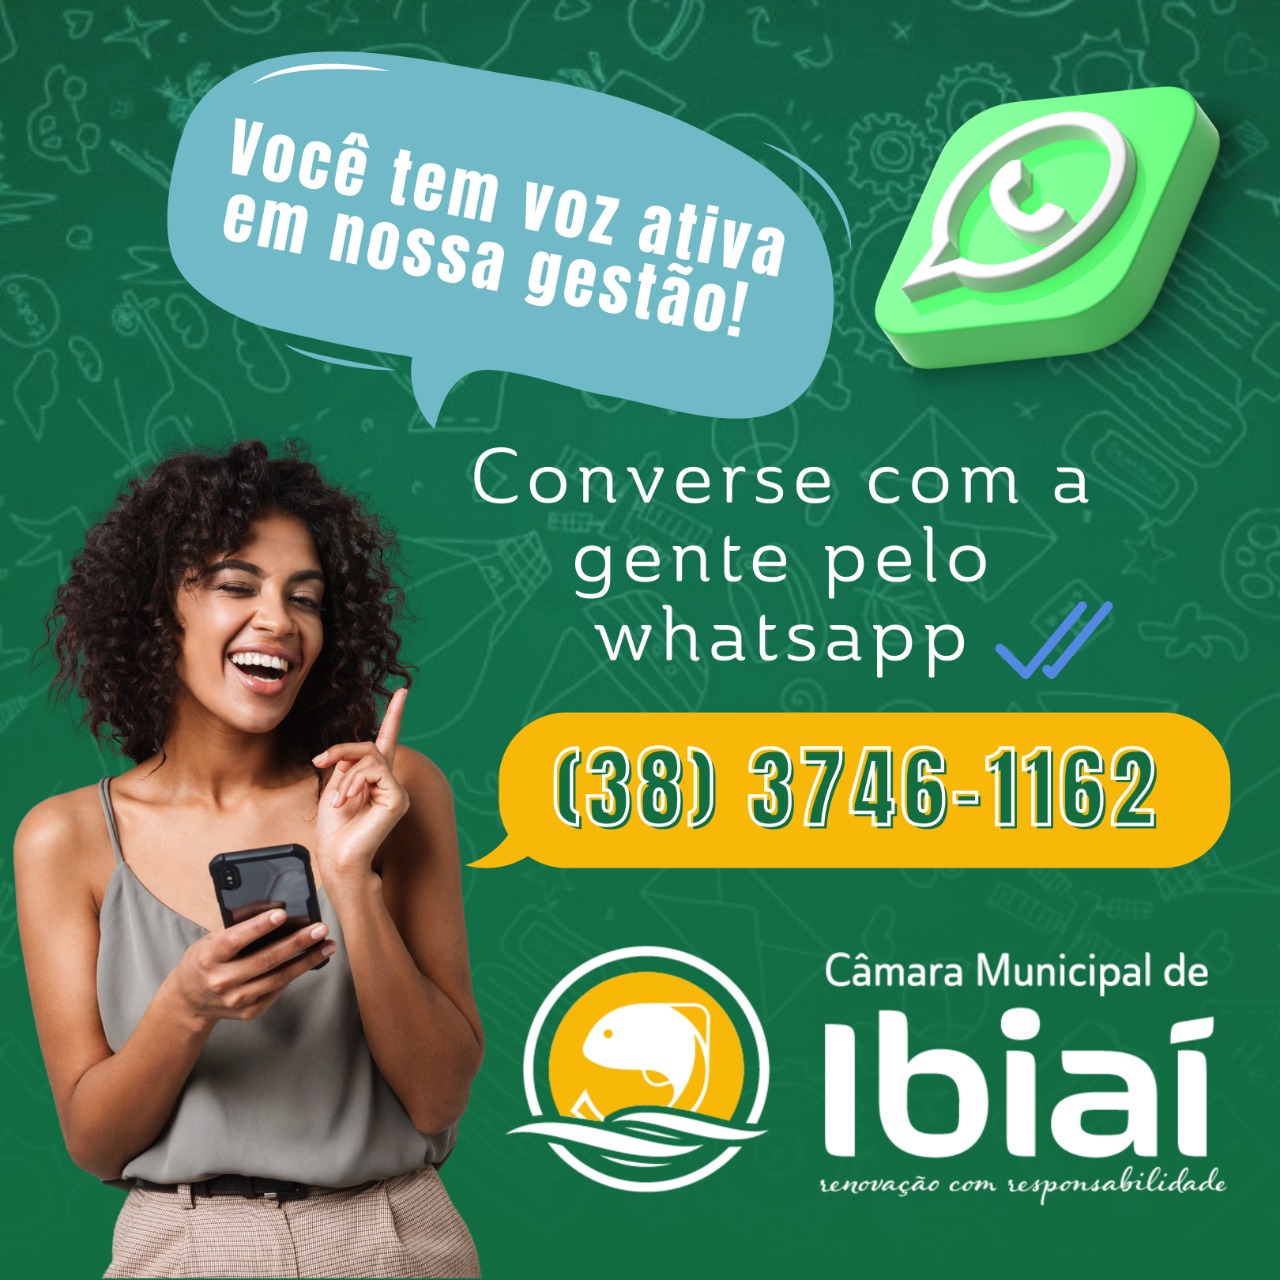 WhatsApp Image 2022-09-09 at 10.38.19